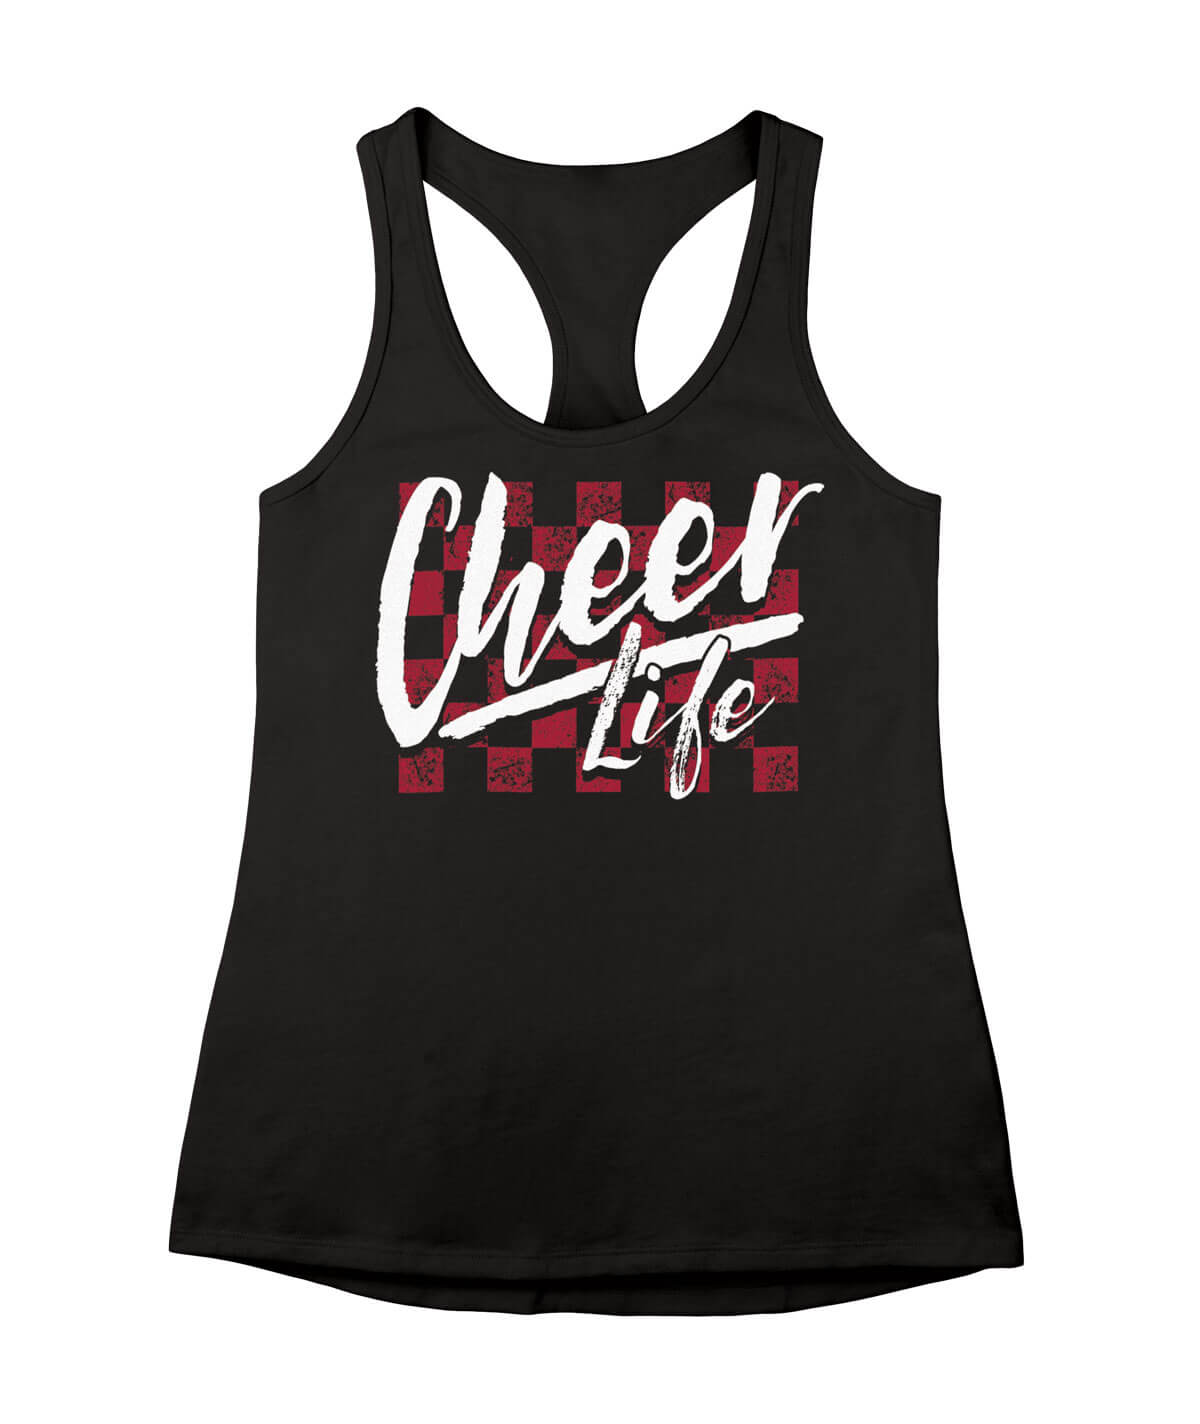 Cheer Life Tank